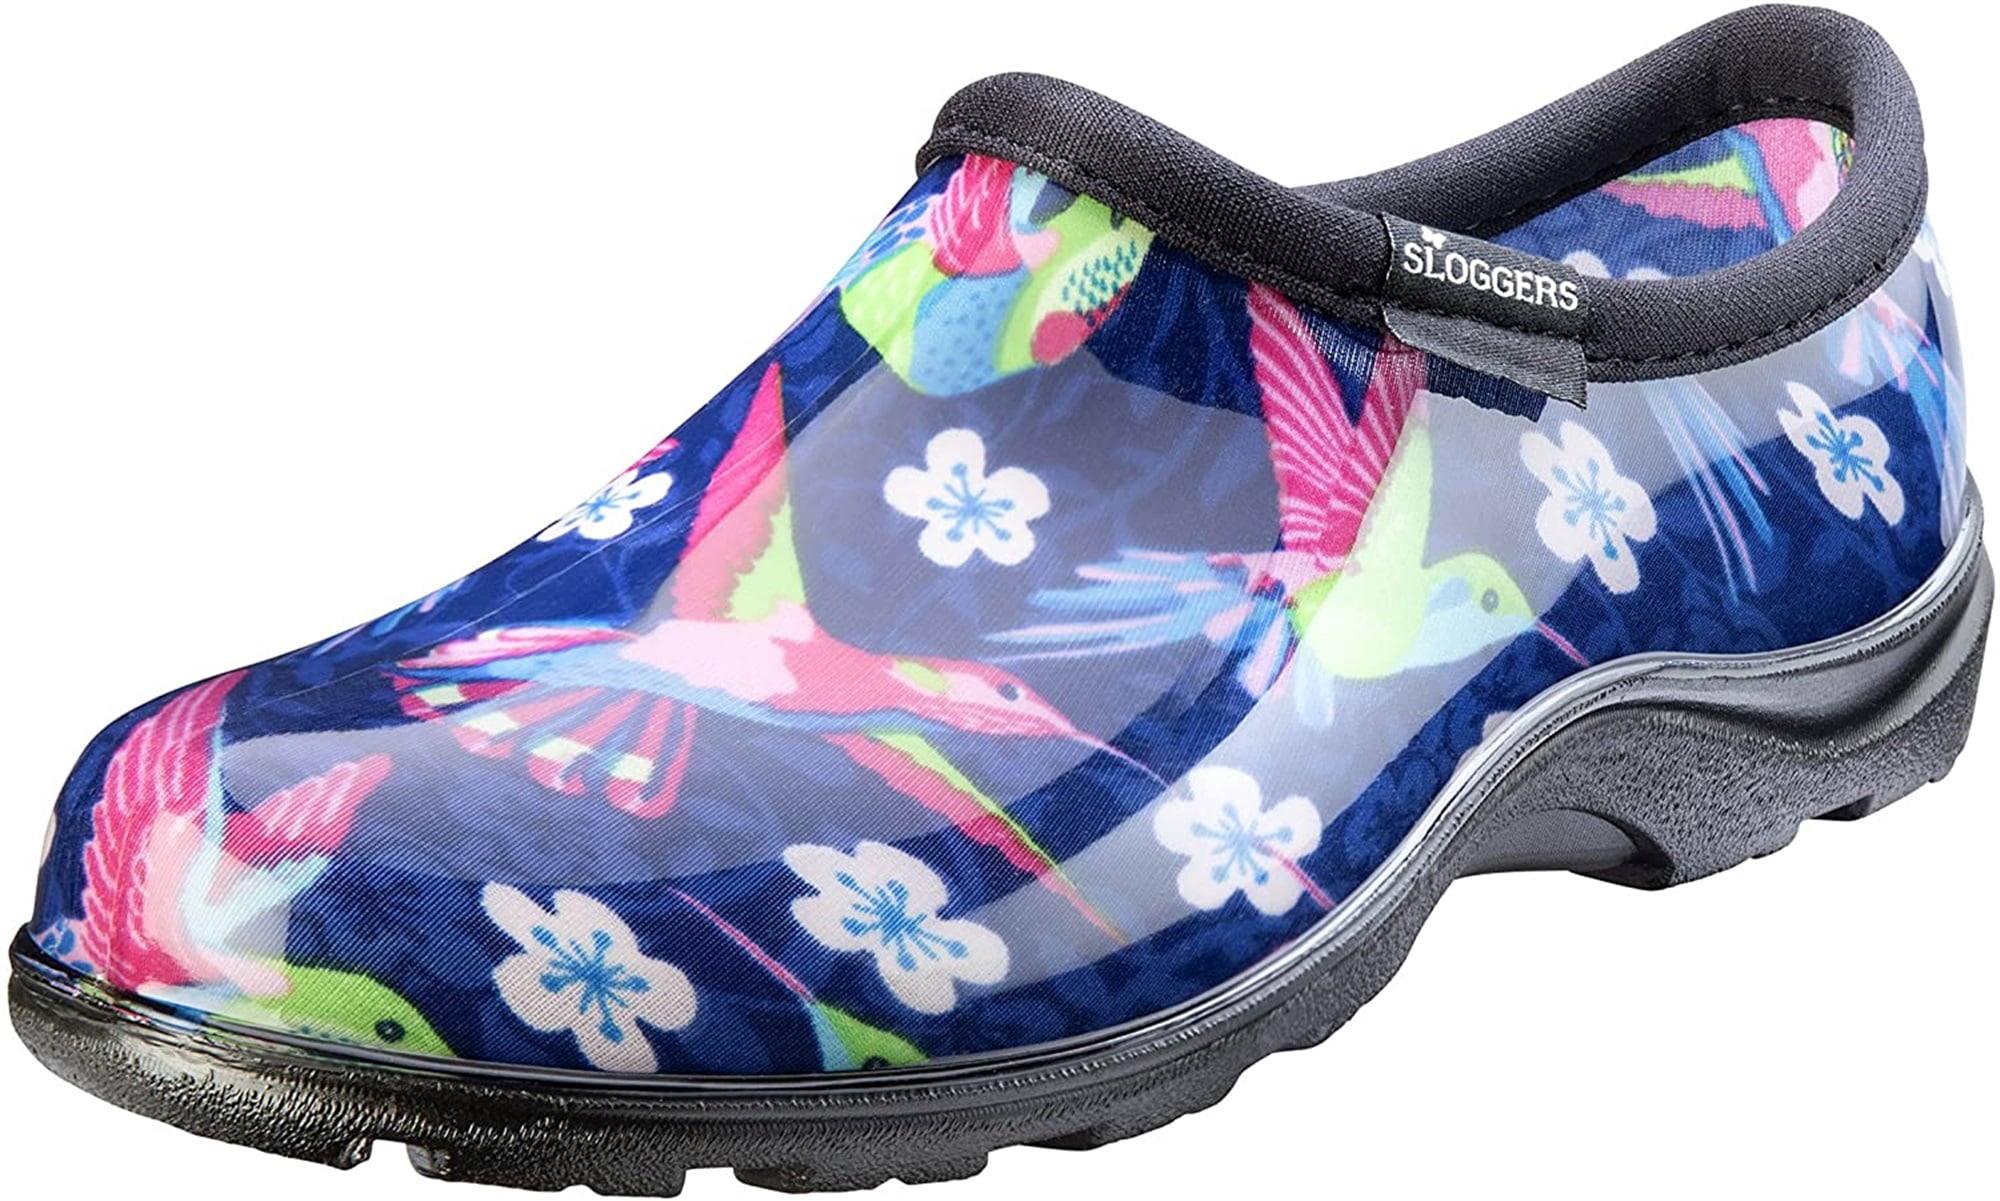 Flower Power SLOGGERS Rain & Garden Waterproof Shoes FAST SHIPPING! 